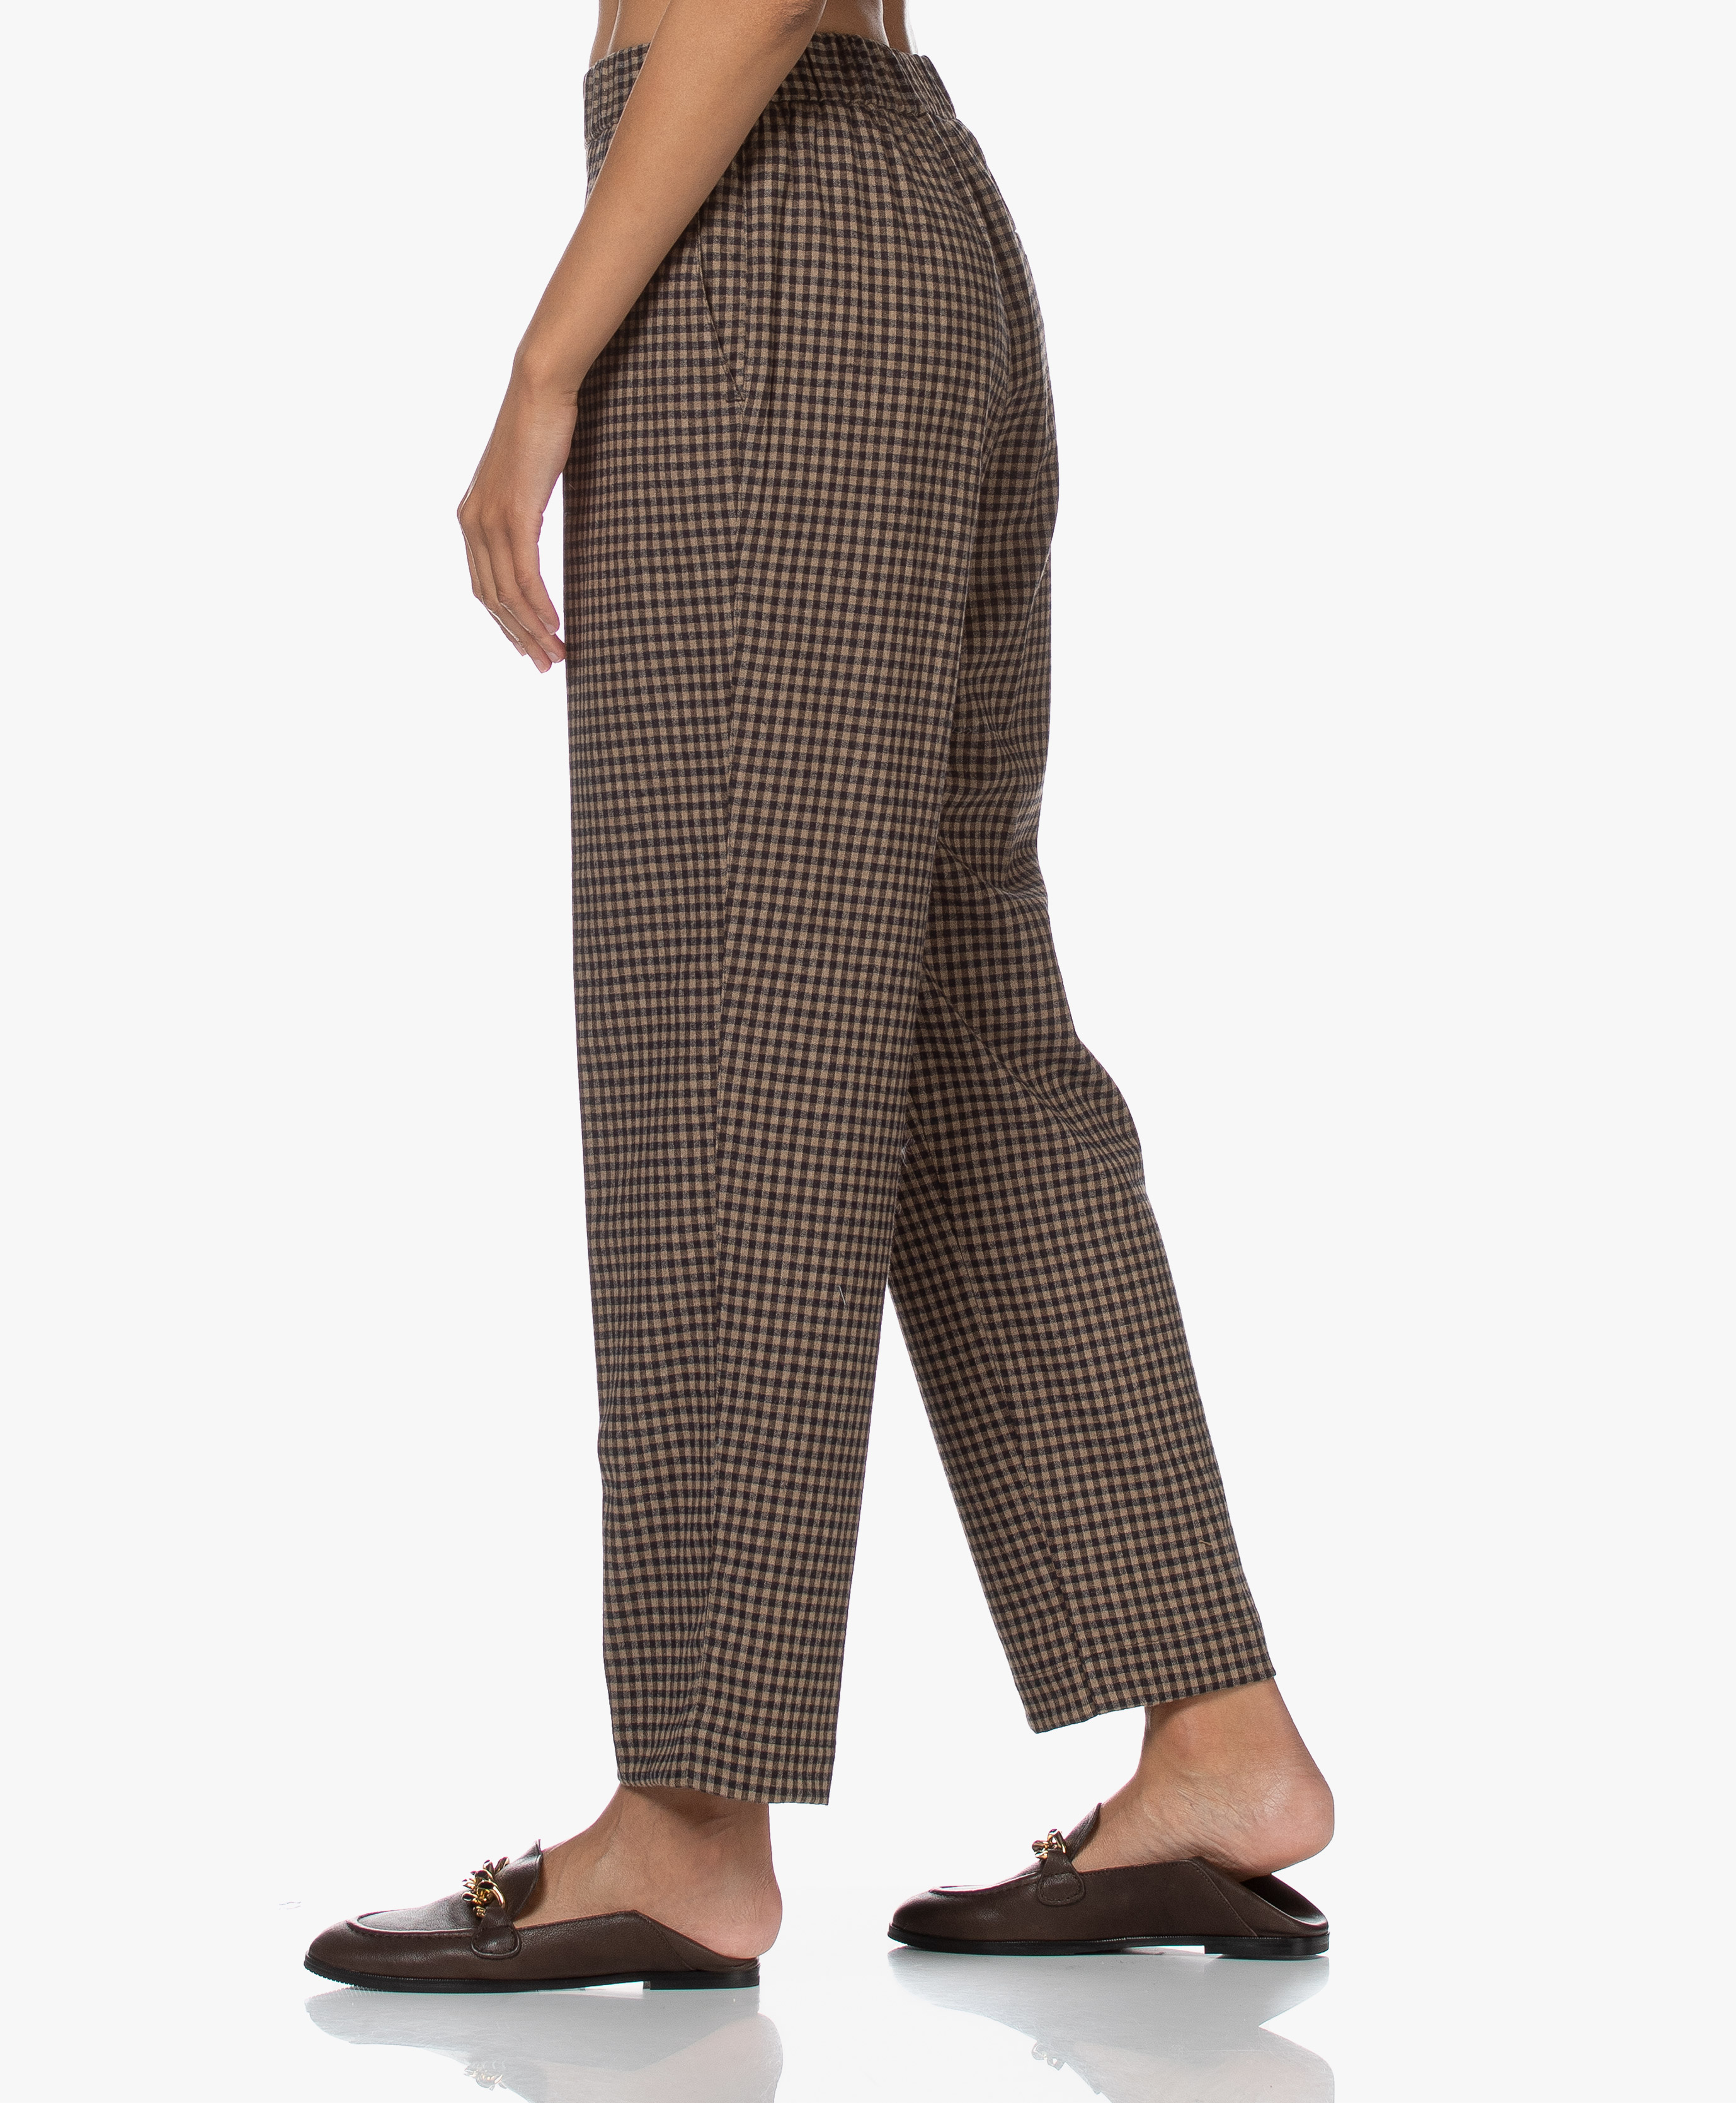 Pomandère Checked Wool Blend Pants - Dark Grey/Brown - 2121-7169/20682 98